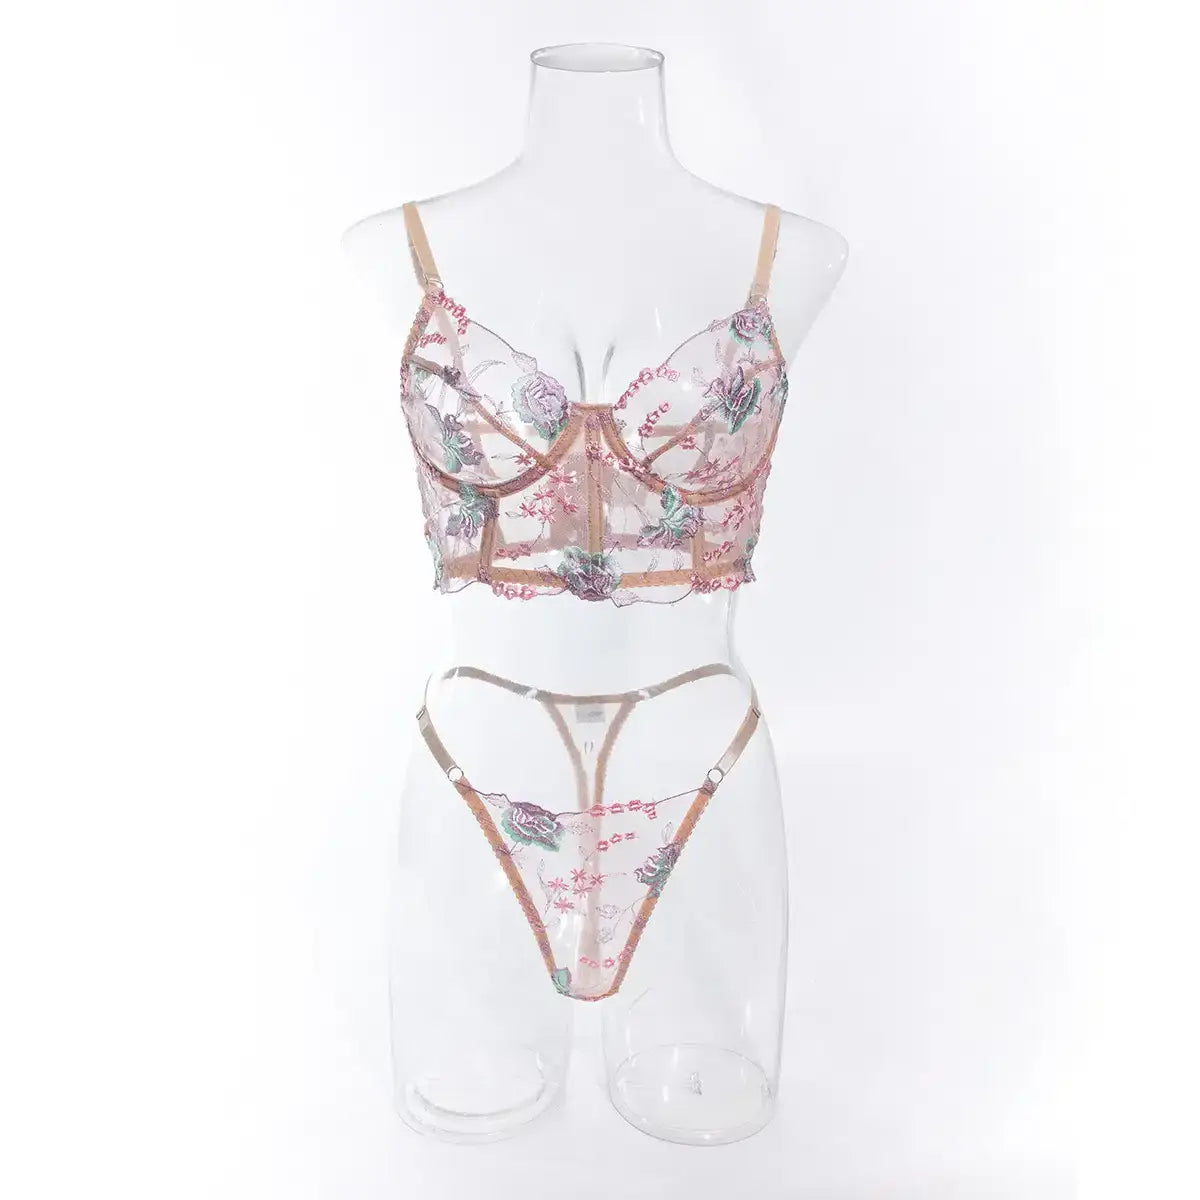 Floral sheer bustier corset set - sets